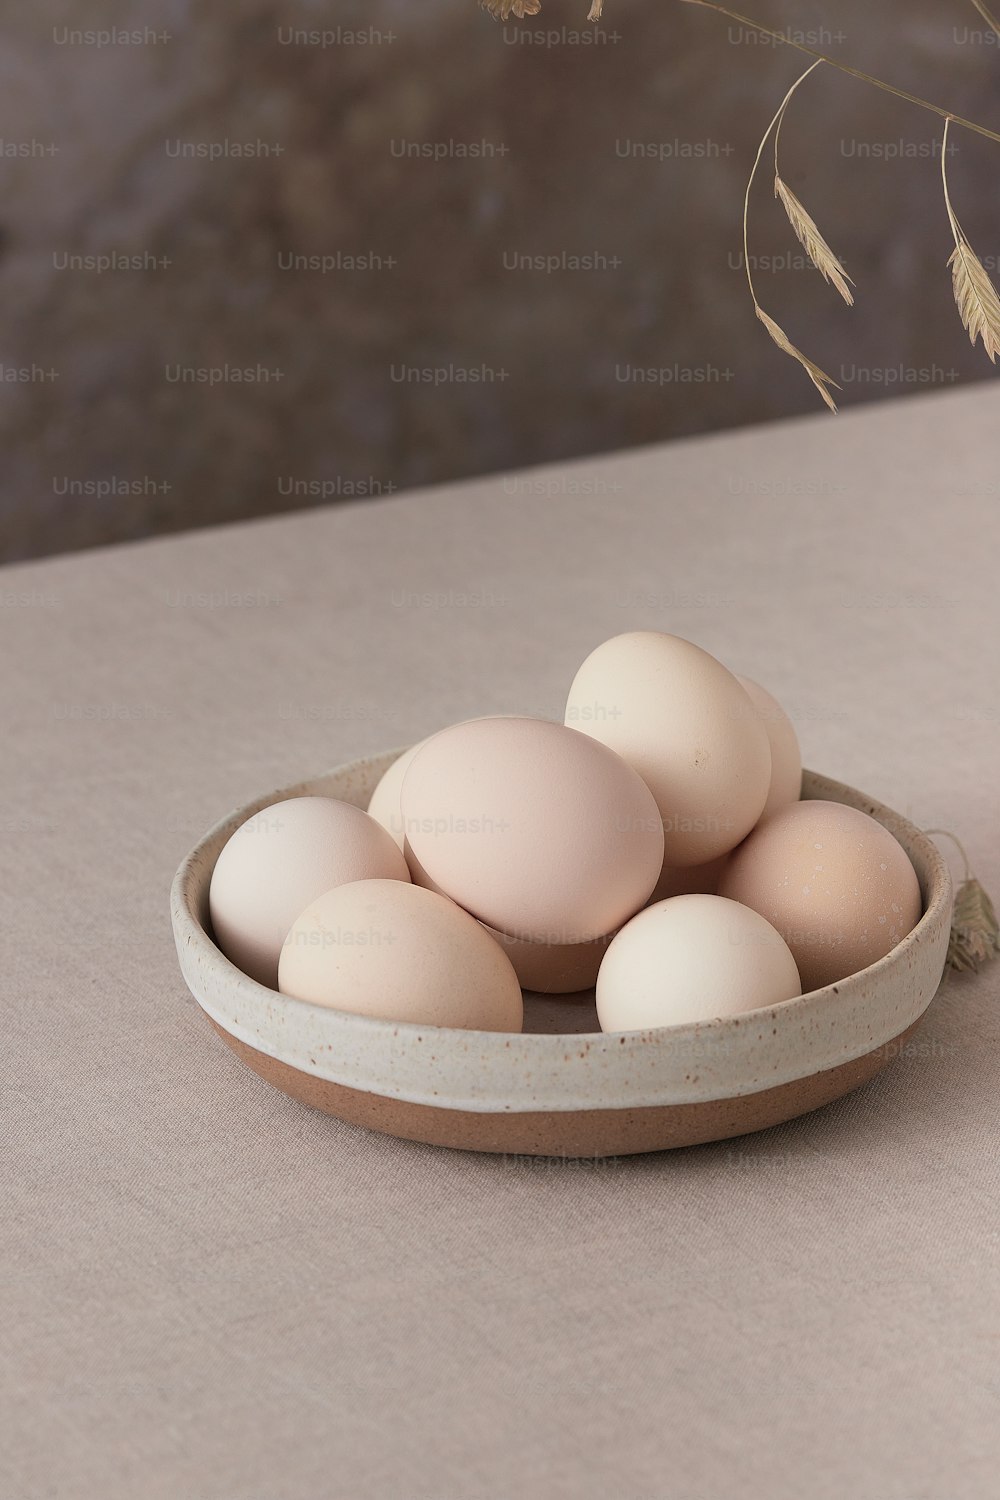 테이블에 앉아있는 계란 한 그릇